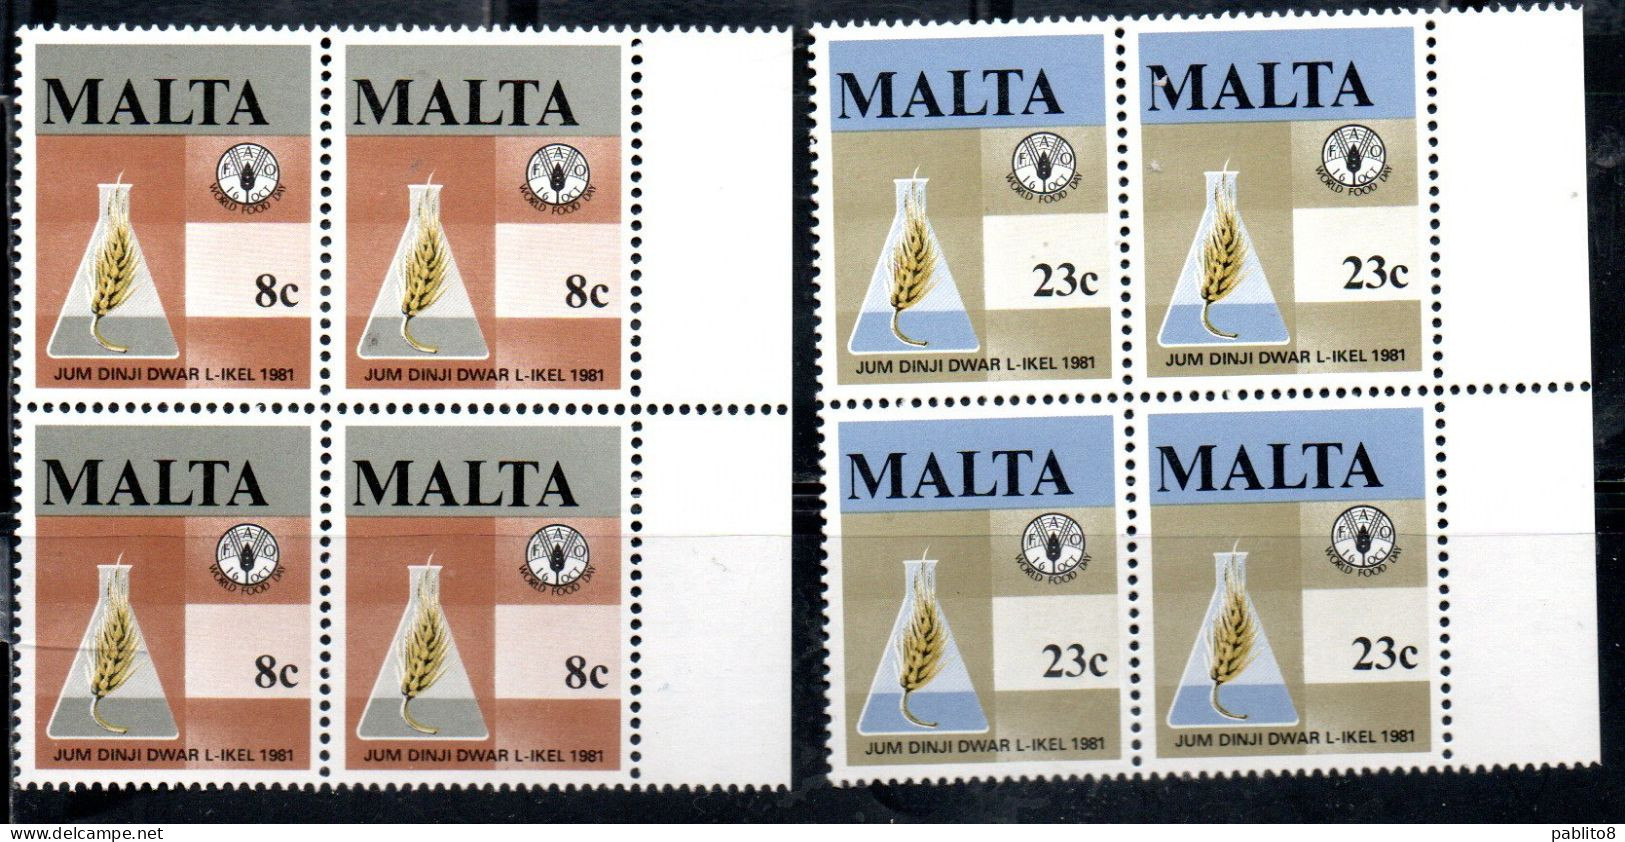 MALTA 1981 WORLD FOOD DAY GIORNATA MONDIALE DELL'ALIMENTAZIONE COMPLETE SET SERIE COMPLETA BLOCK QUARTINA MNH - Malta